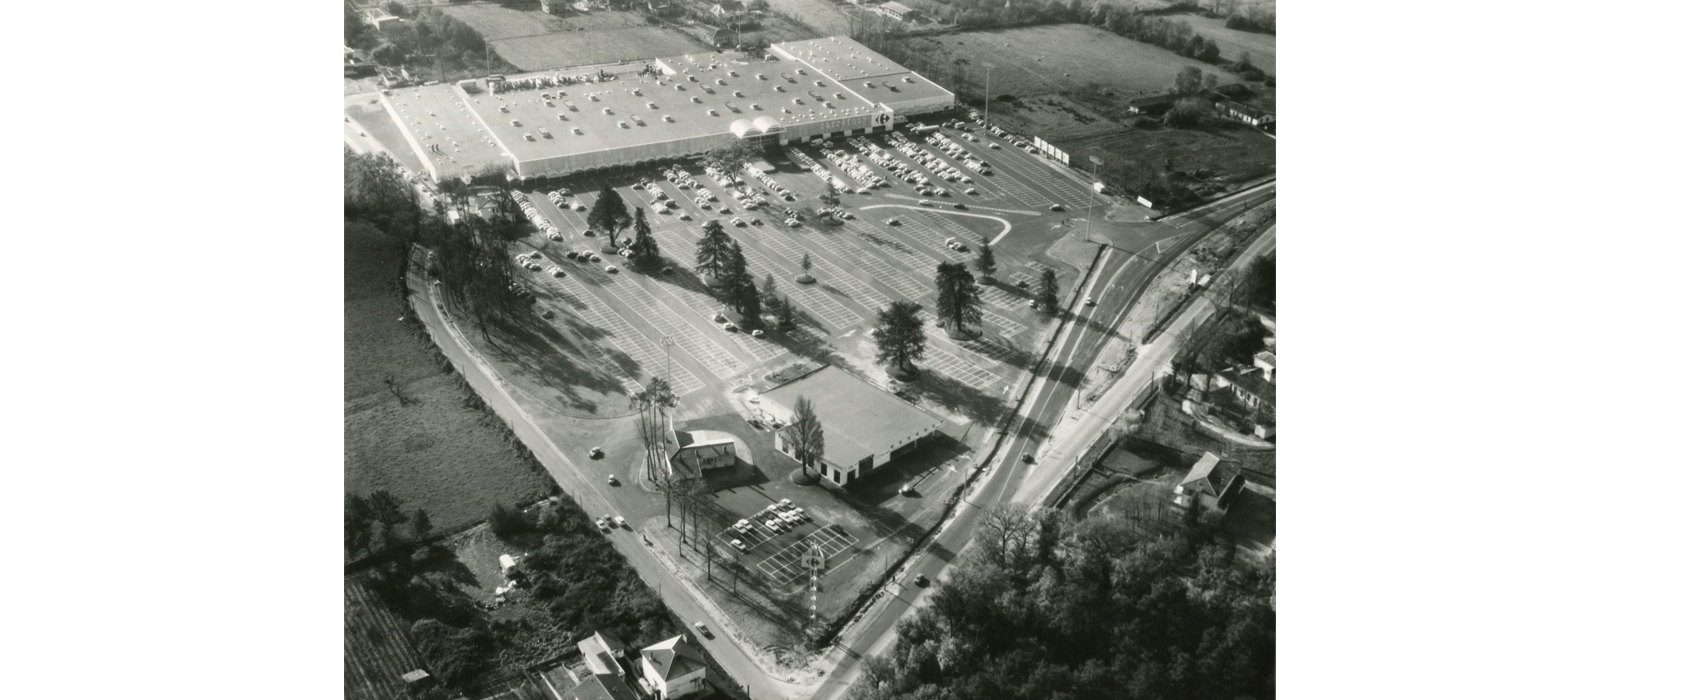 l’hypermarché Carrefour en 1969 